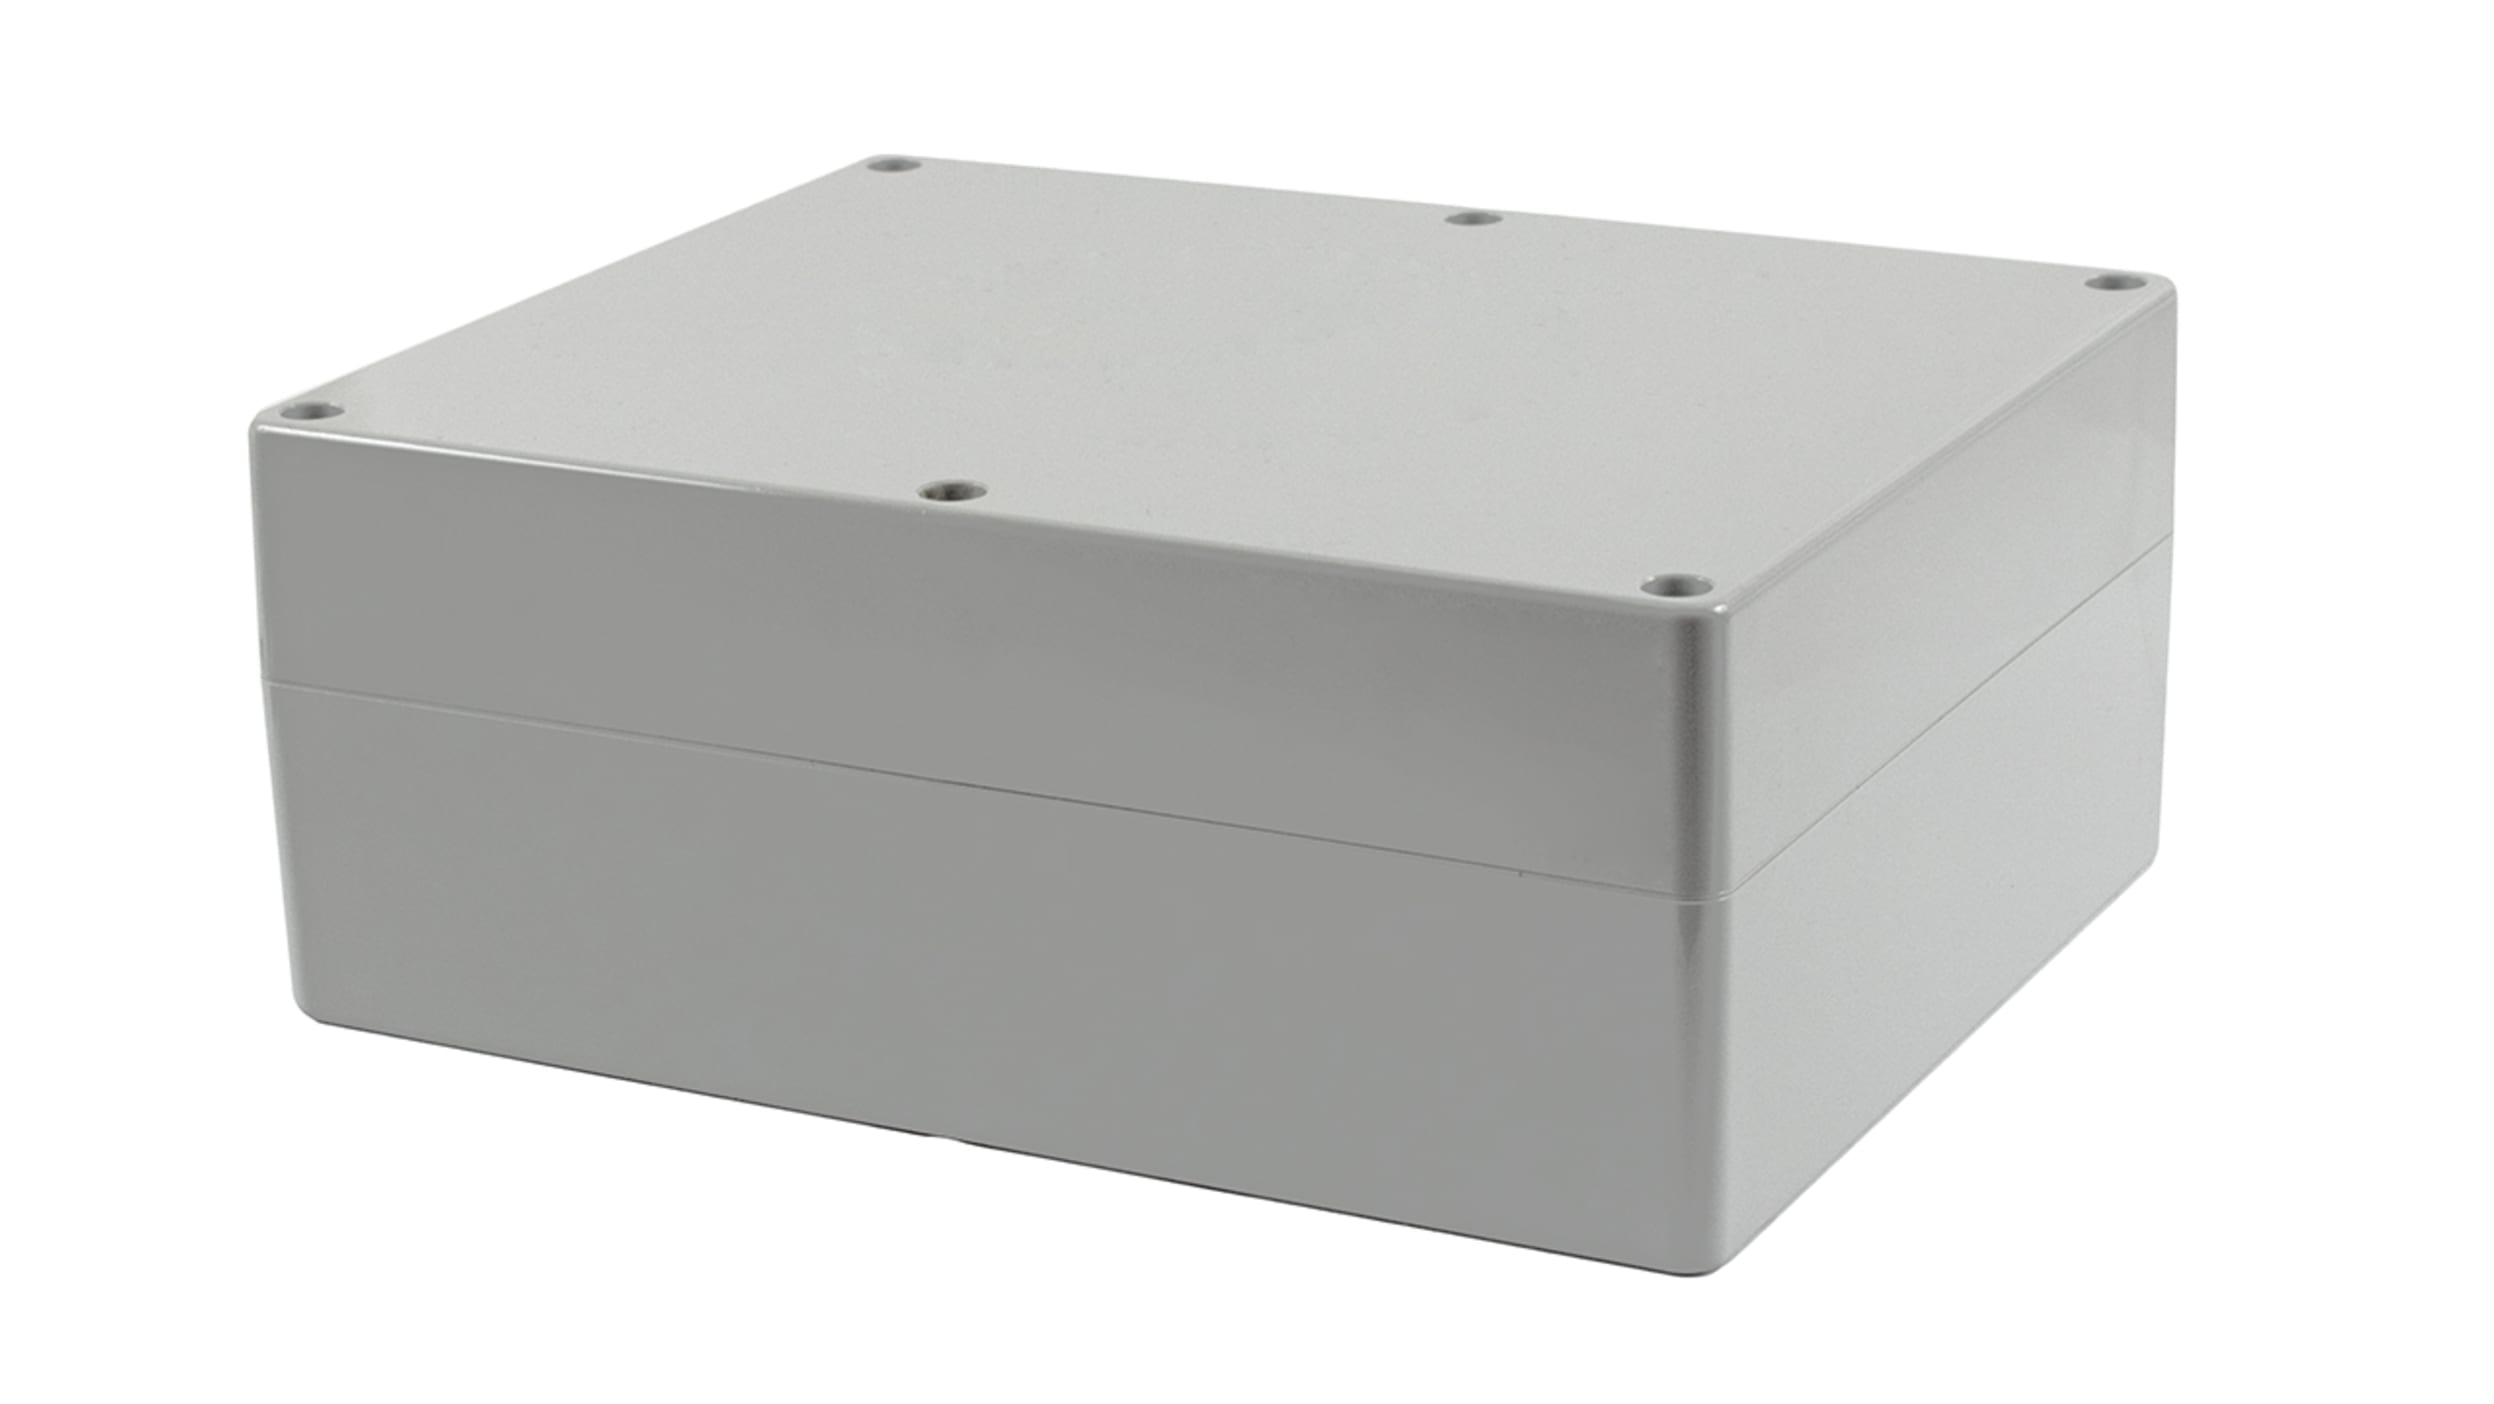 Junction Box Electrical Enclosure IP66 Waterproof ABS Plastic 11.8